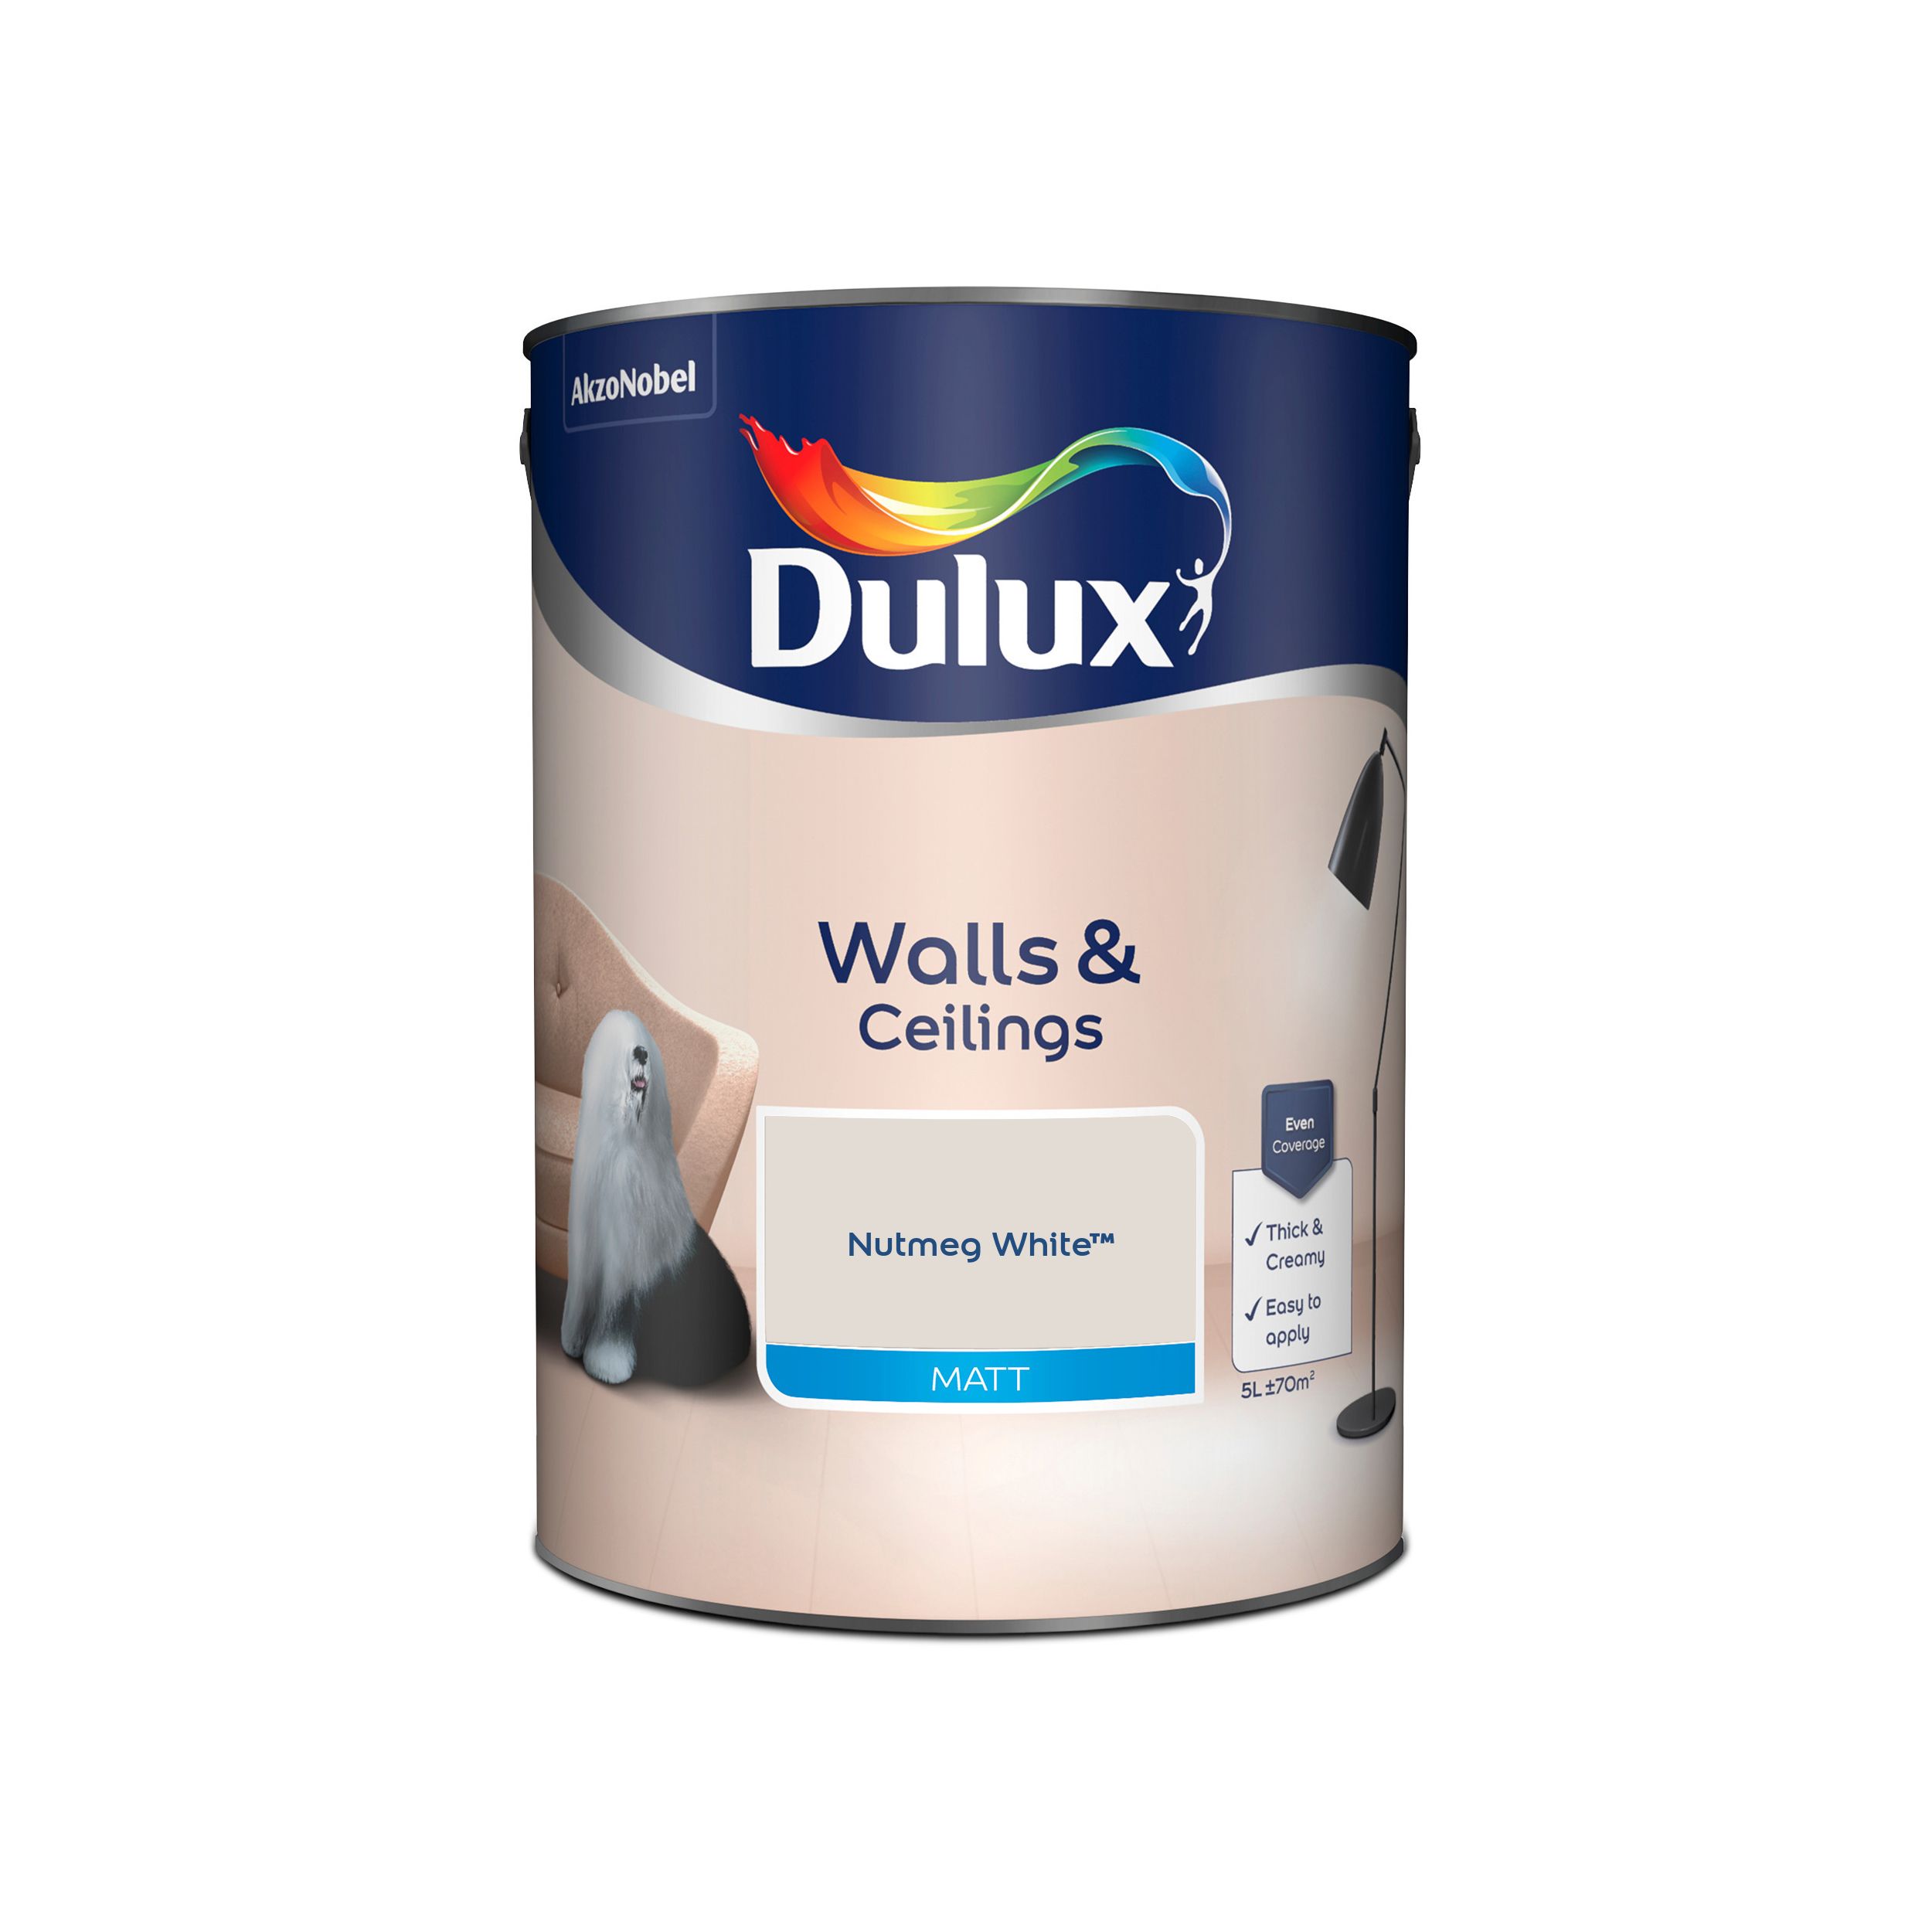 Dulux Walls & ceilings Nutmeg white Matt Emulsion paint, 5L